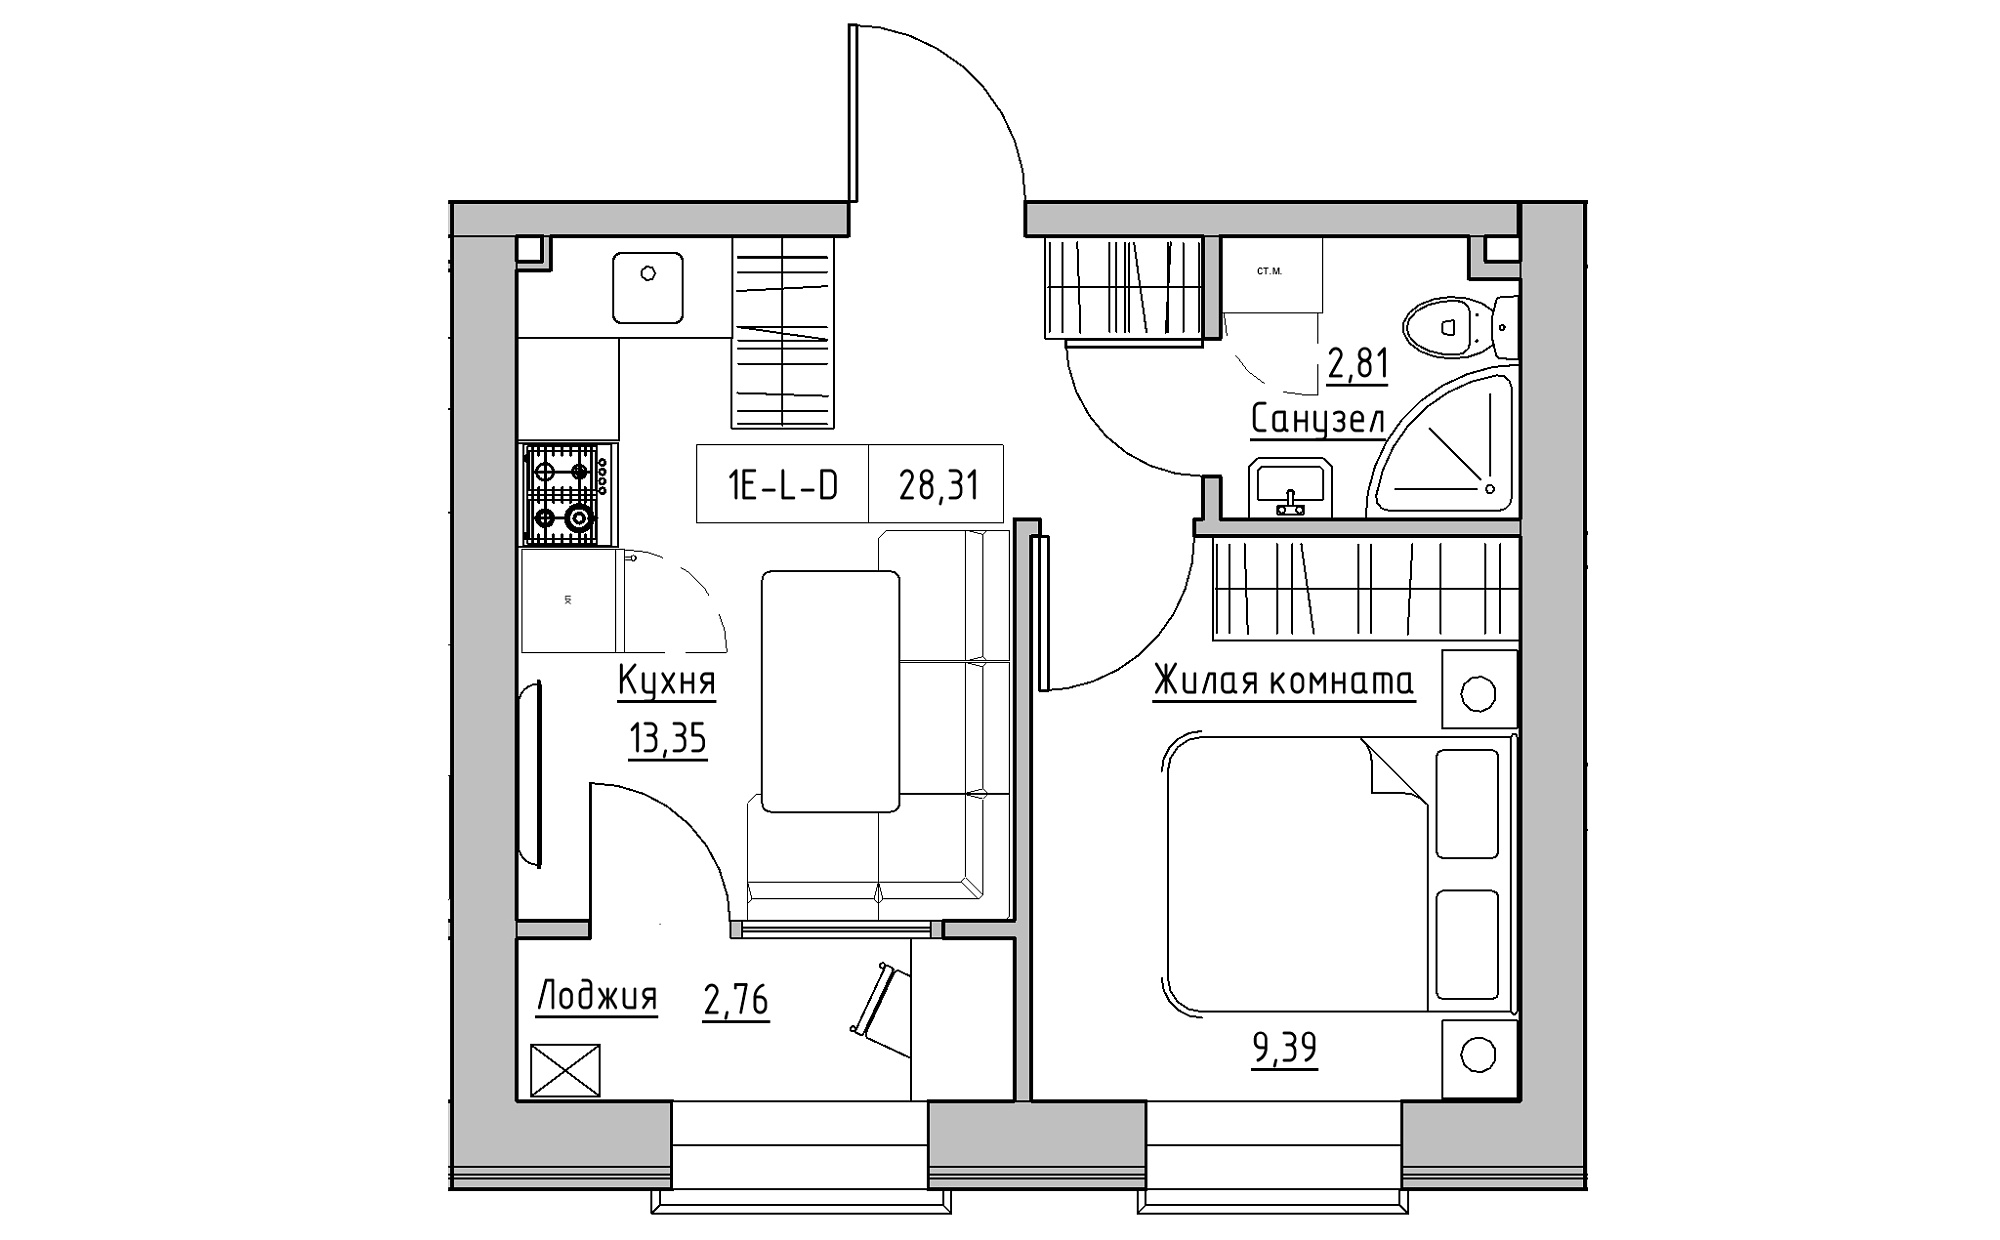 Планування 1-к квартира площею 28.31м2, KS-022-05/0001.